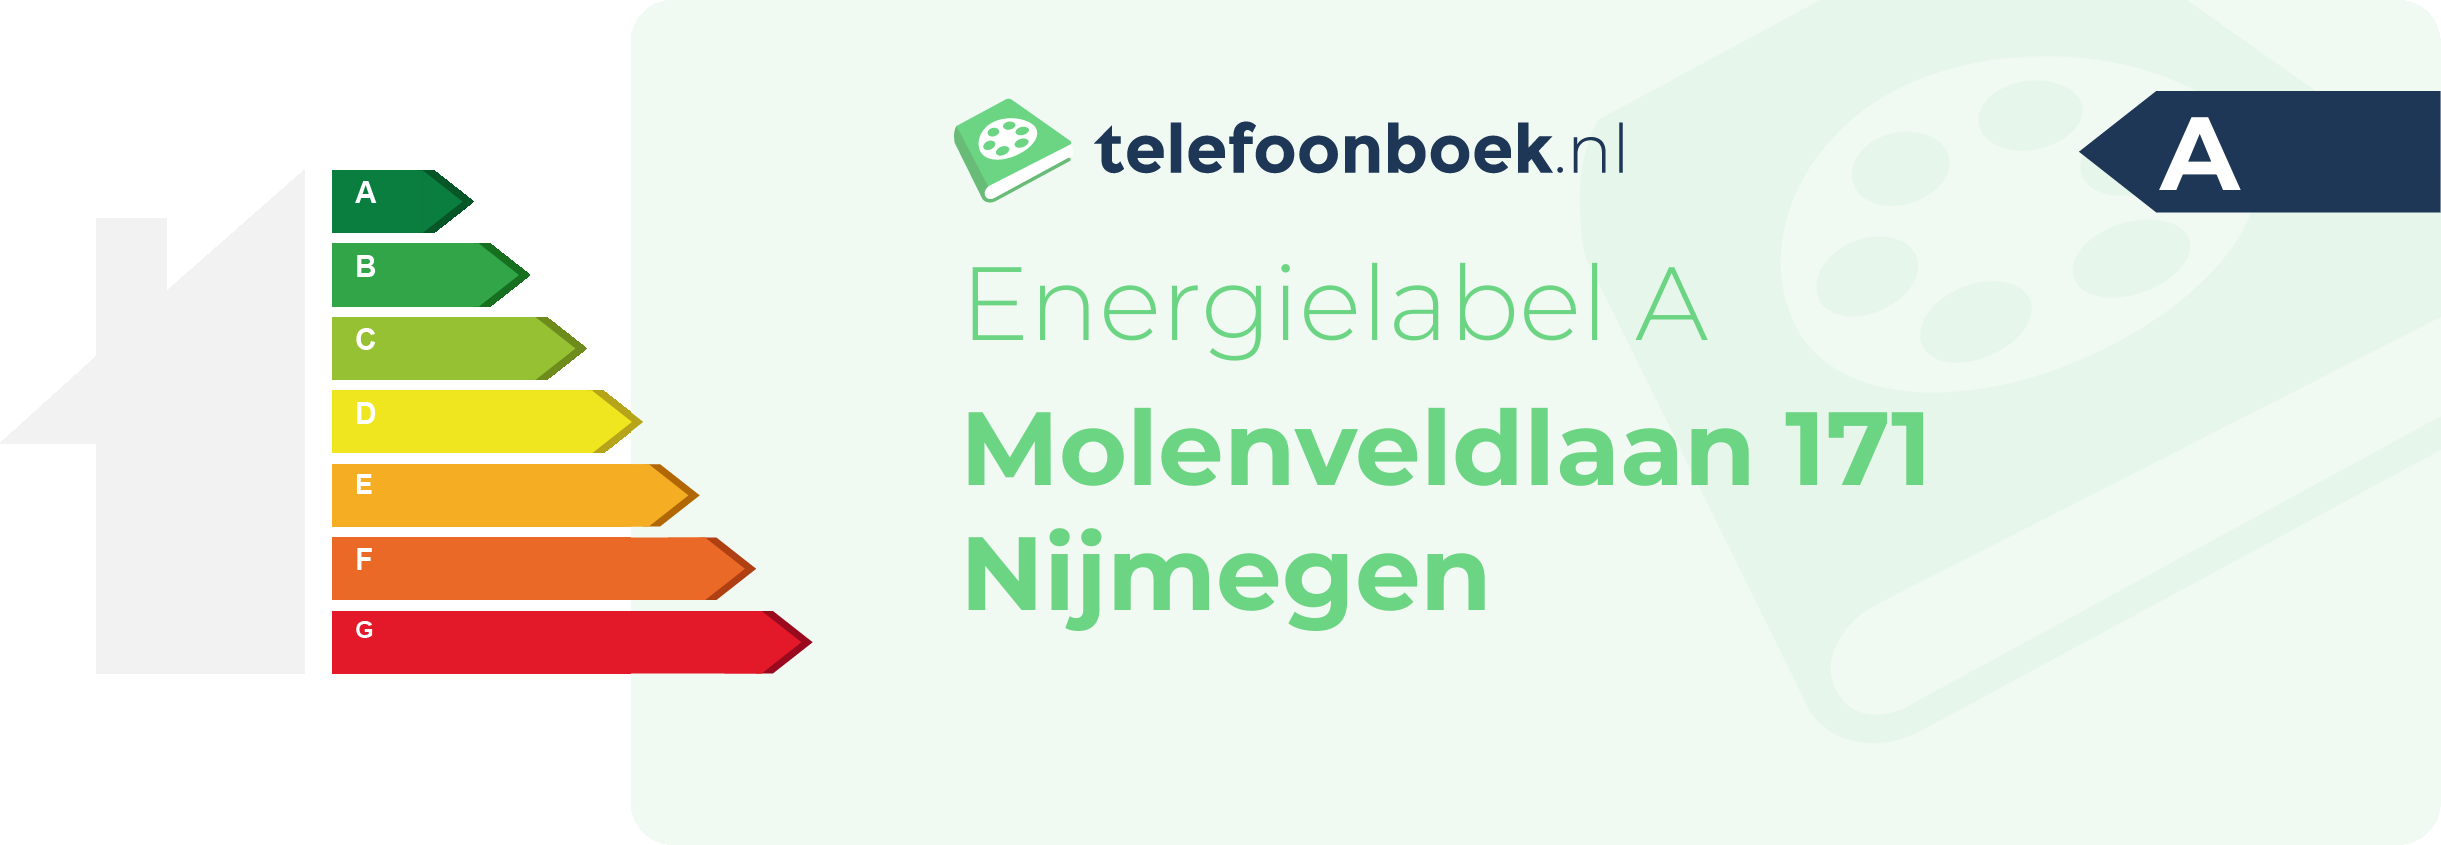 Energielabel Molenveldlaan 171 Nijmegen